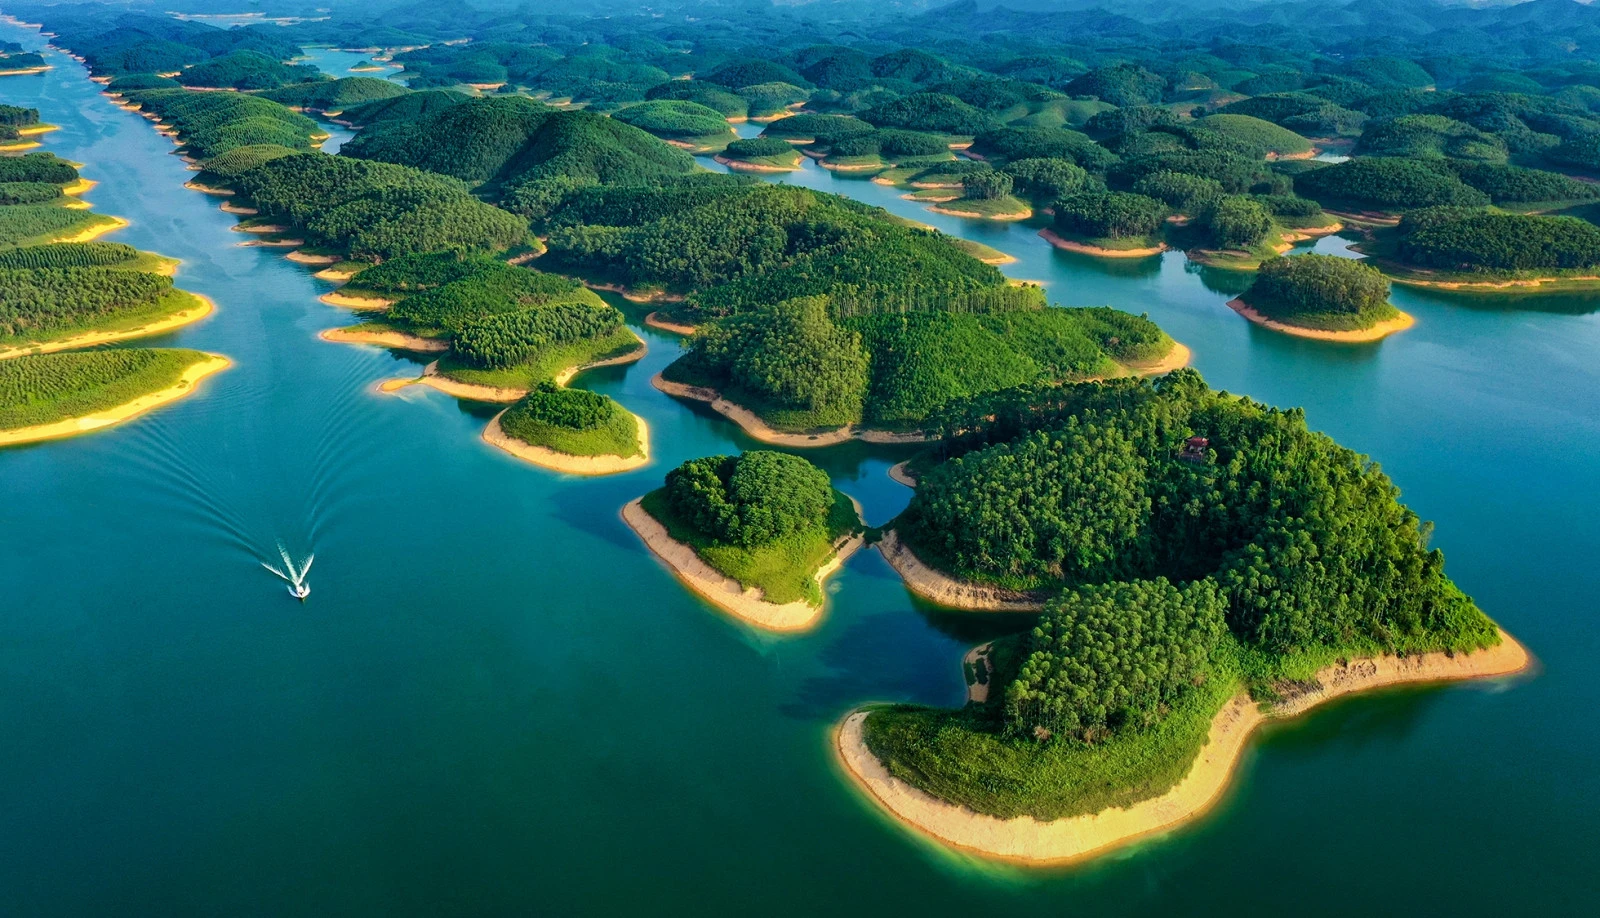 Hồ Thác Bà, huyện Yên Bình